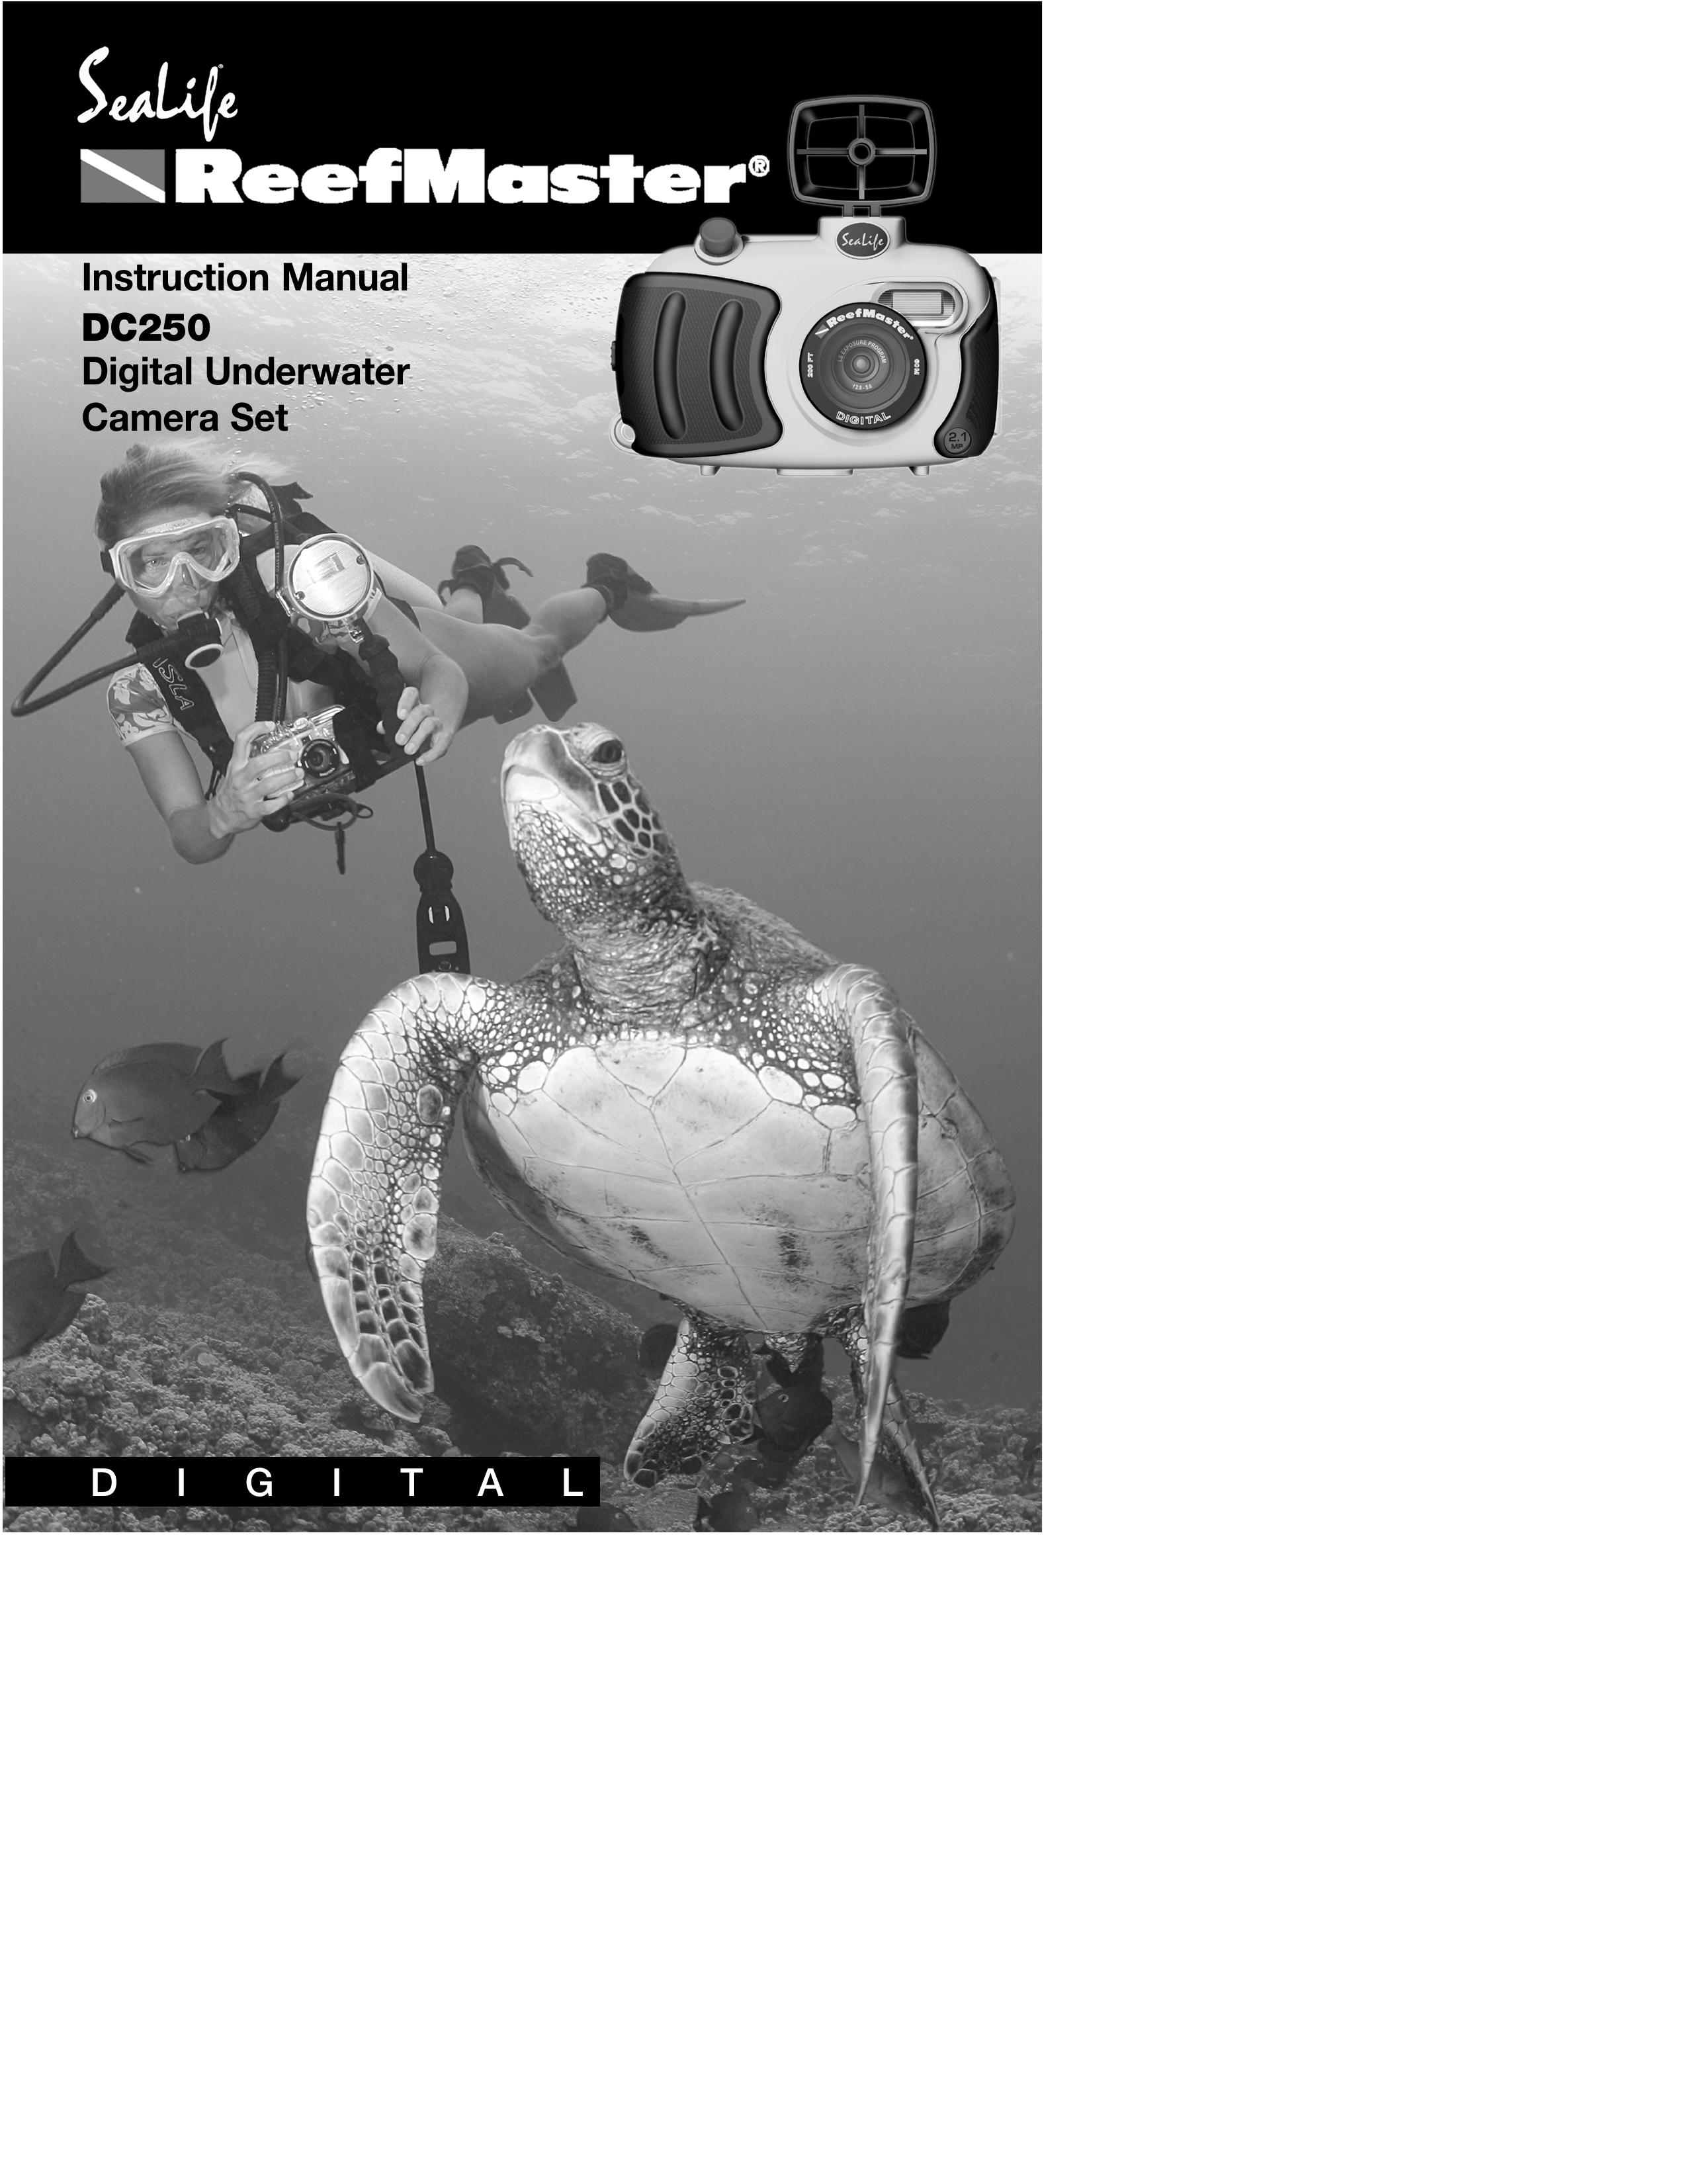 Sealife DC250 Digital Camera User Manual